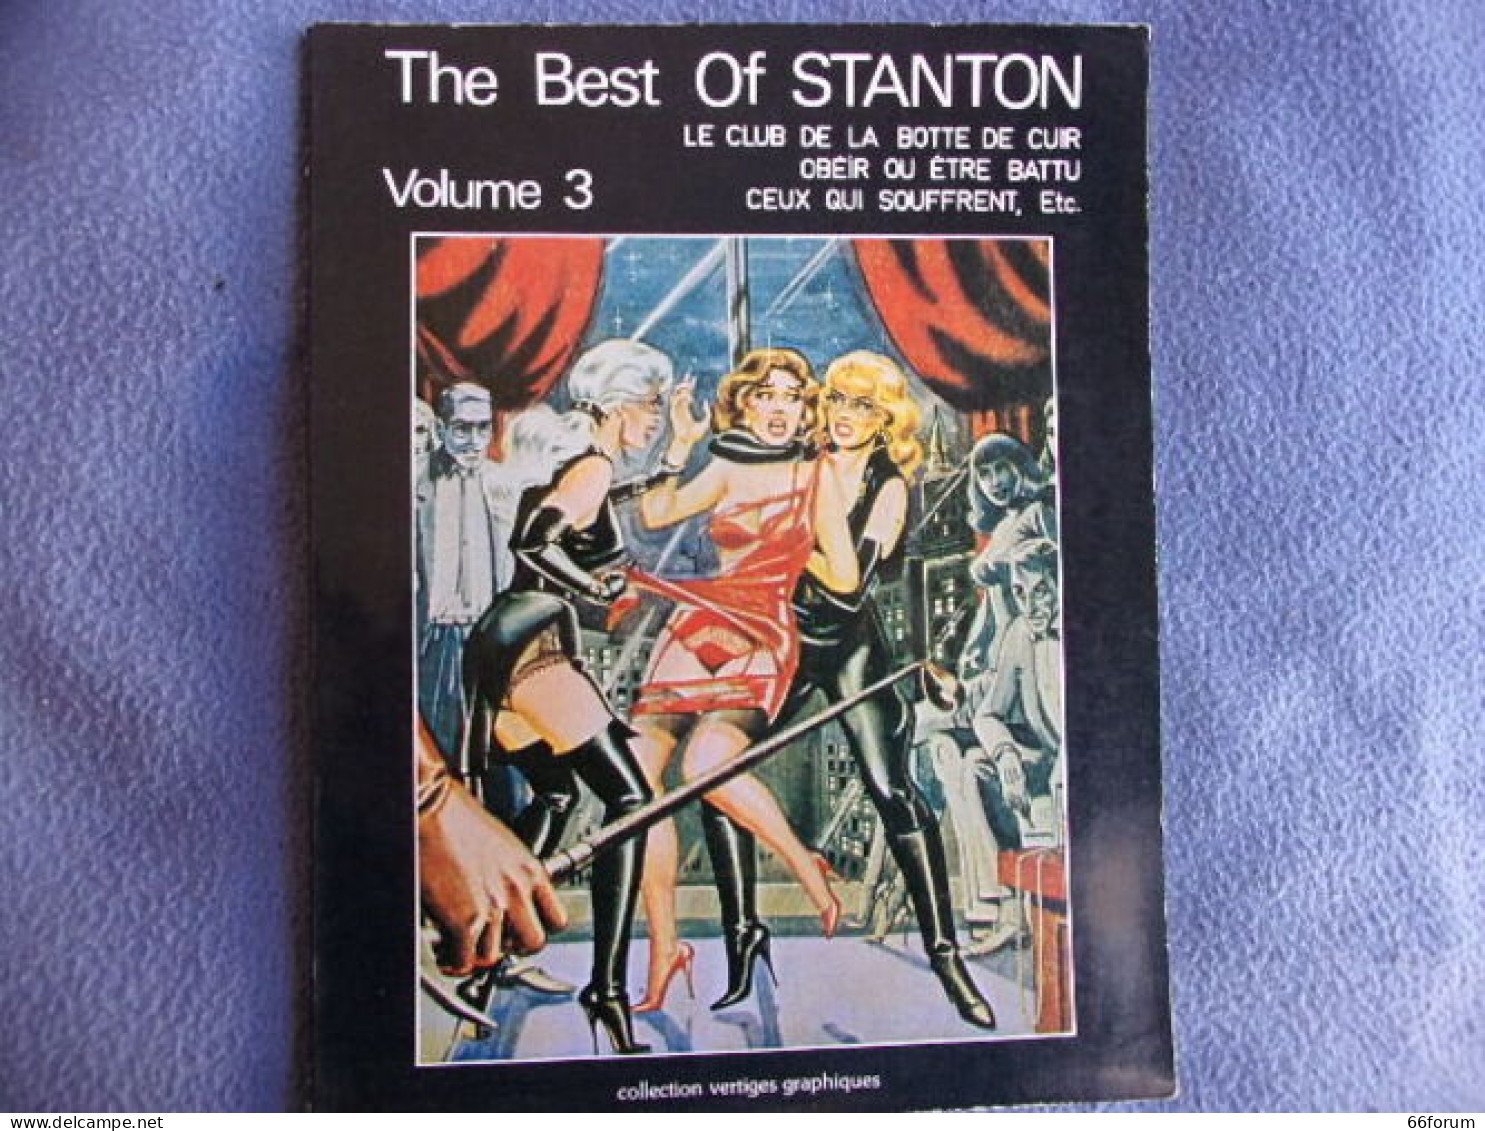 The Best Of Stanton Volume 3 - Gezondheid